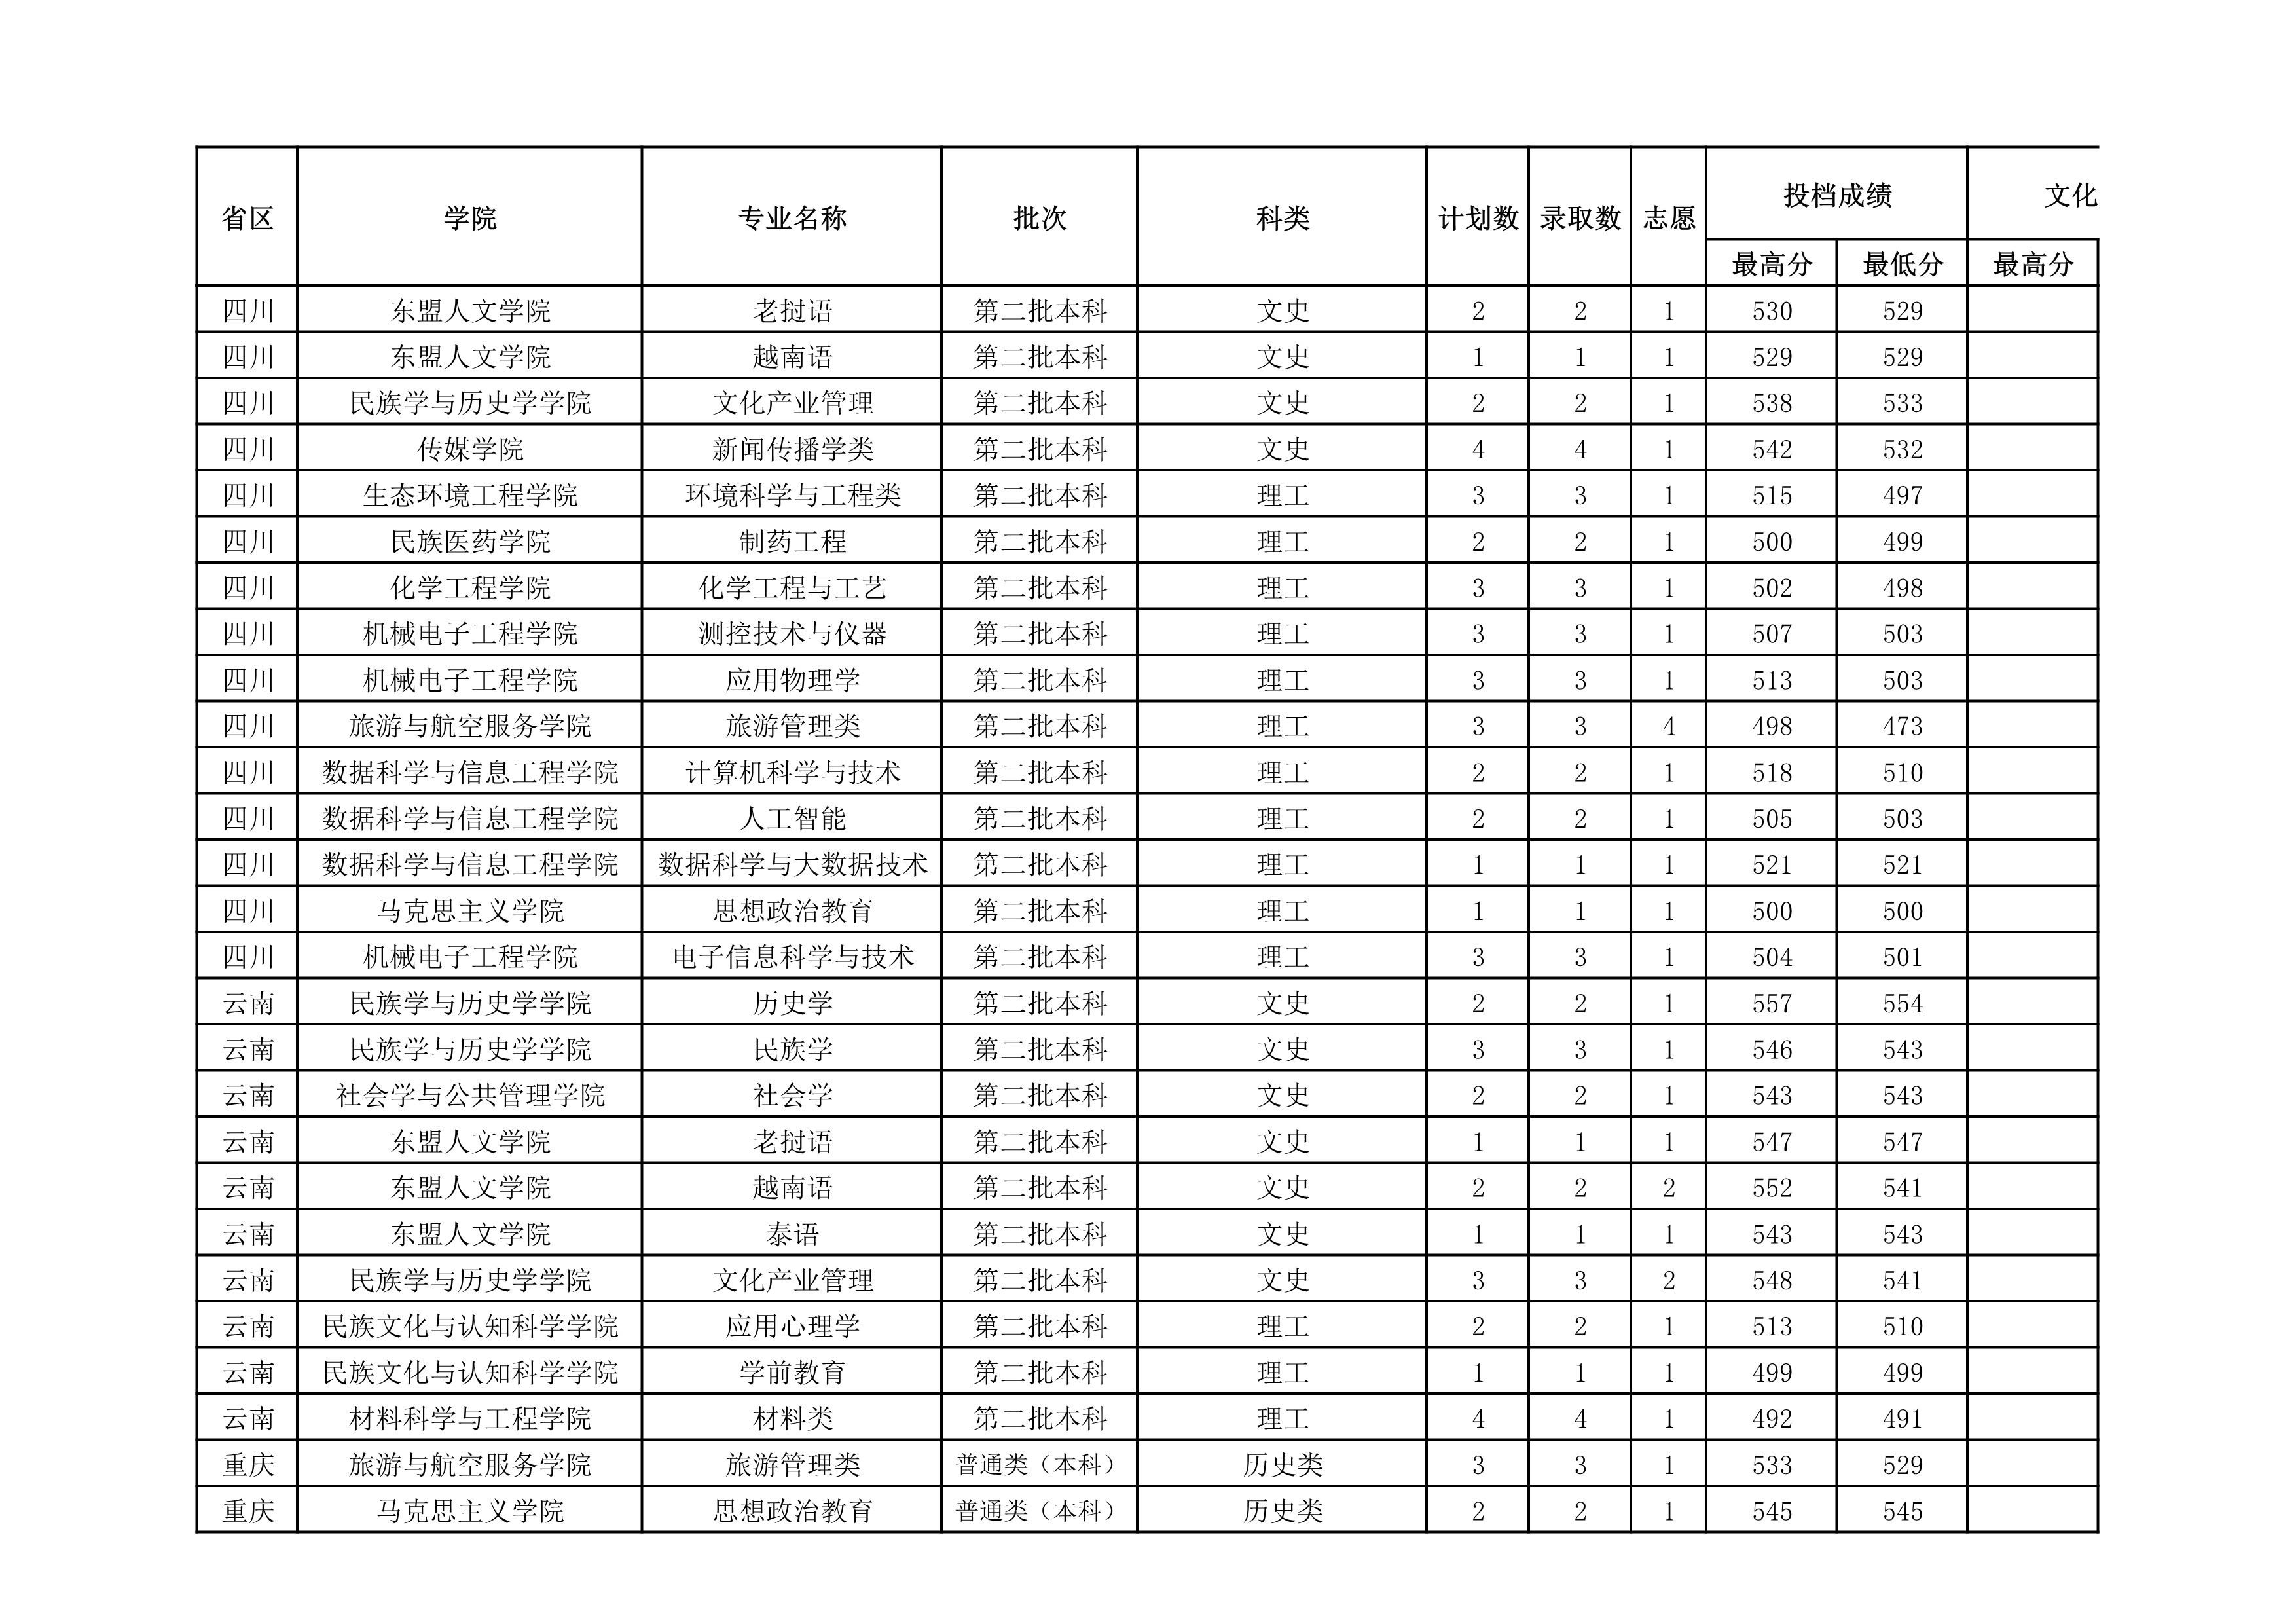 贵州民族大学2021年省外录取分数情况统计表_20220414154148_5.jpg